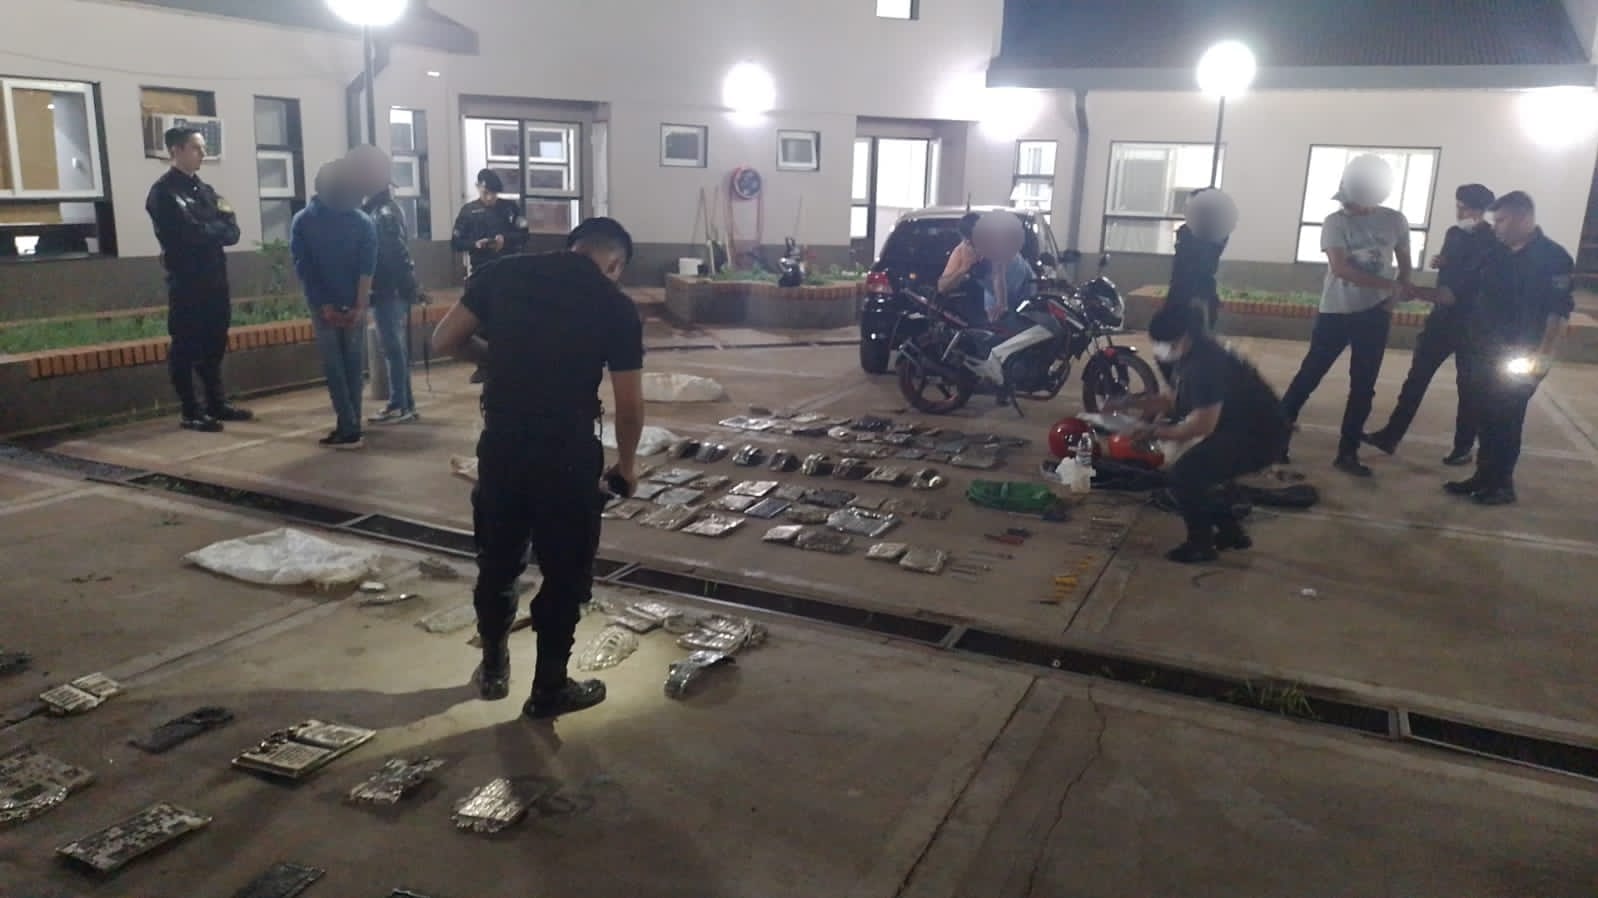 Capturaron a dos motociclistas con un centenar de placas robadas del cementerio